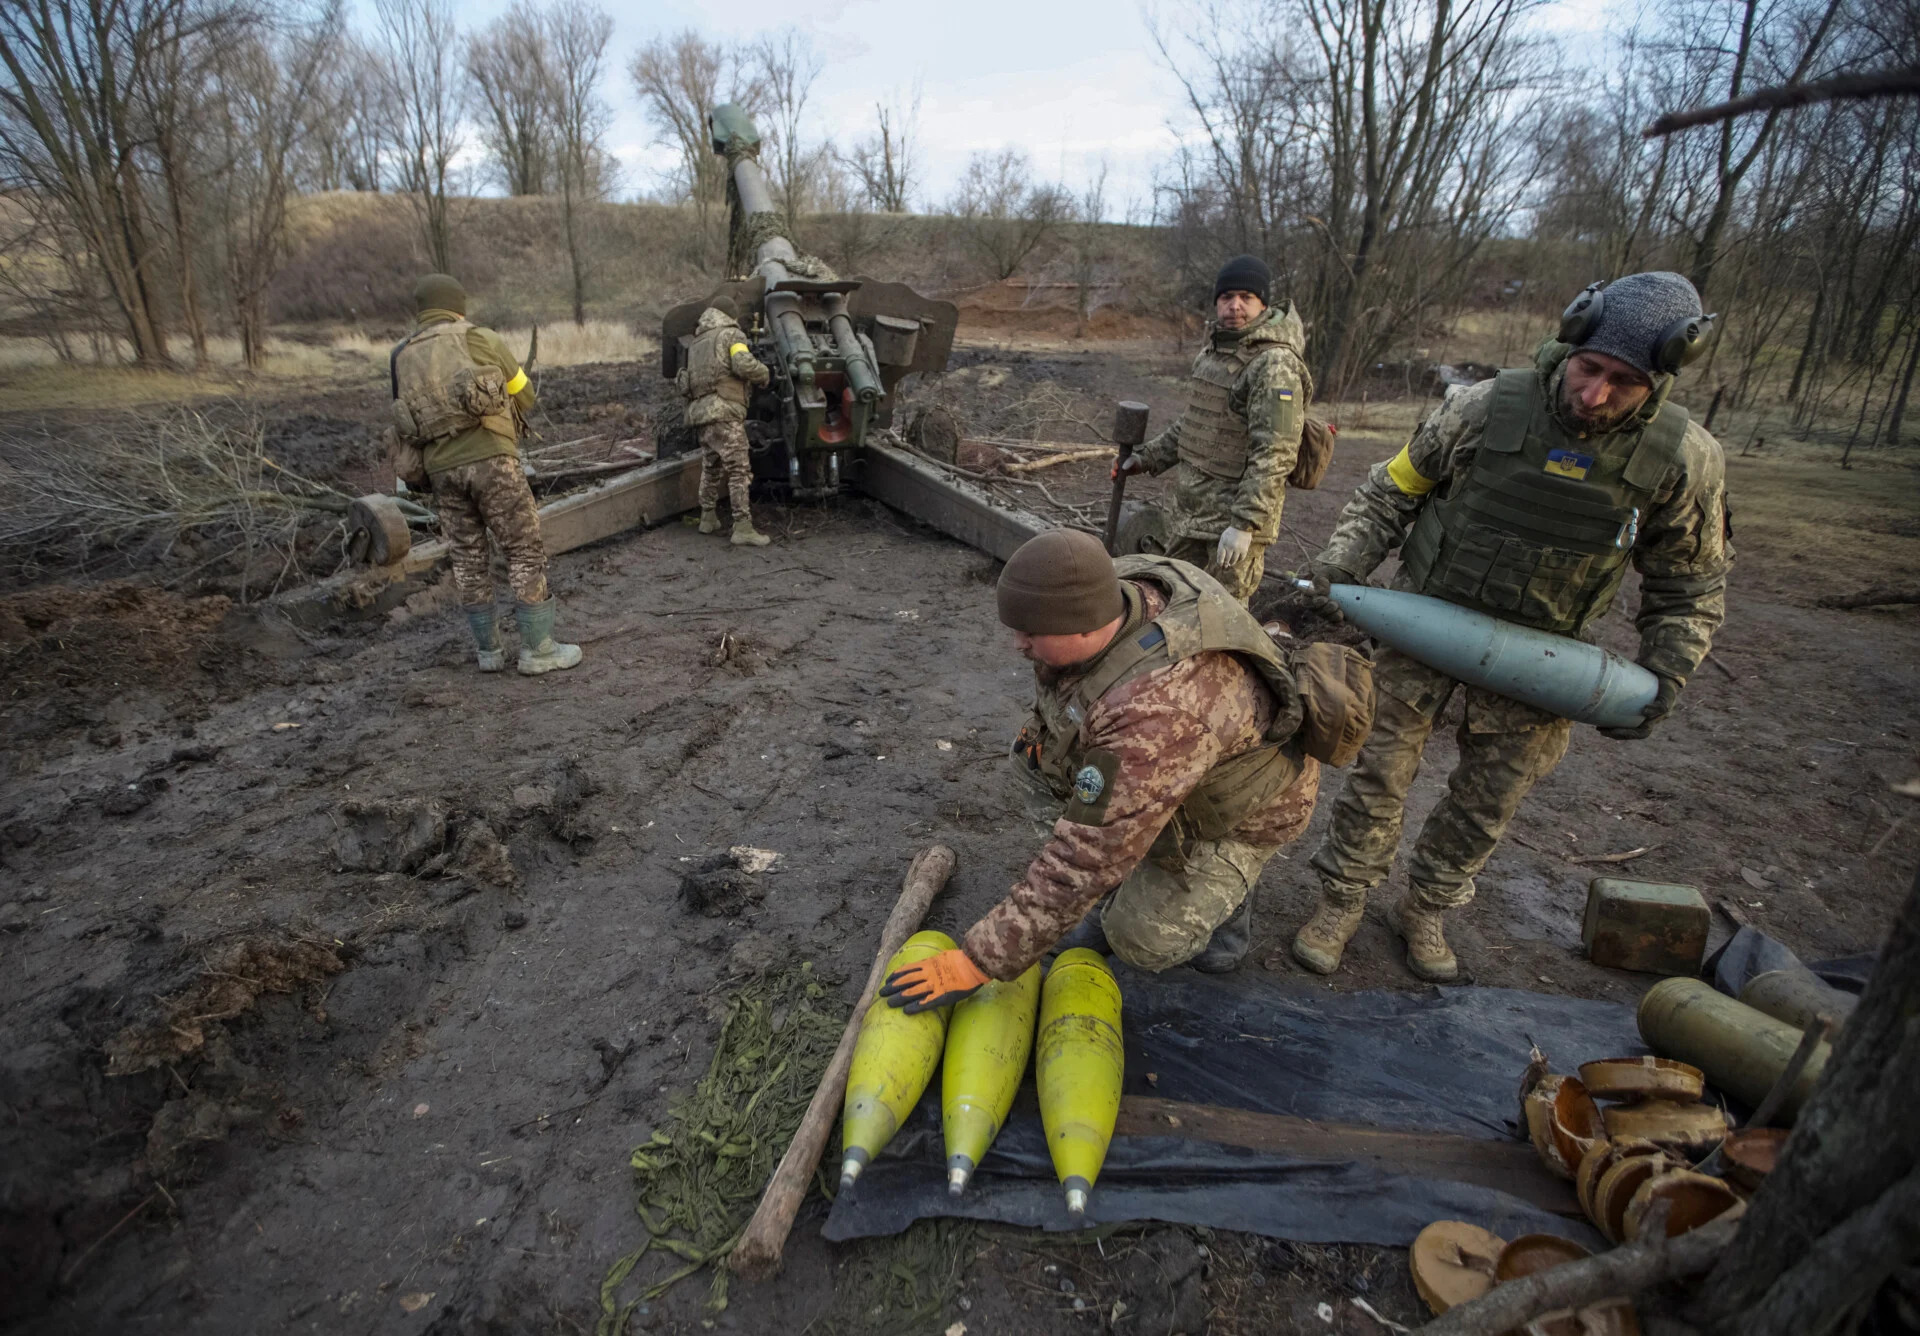 Ντονέτσκ: Ουκρανικοί βομβαρδισμοί σε θερμοηλεκτρικά εργοστάσια